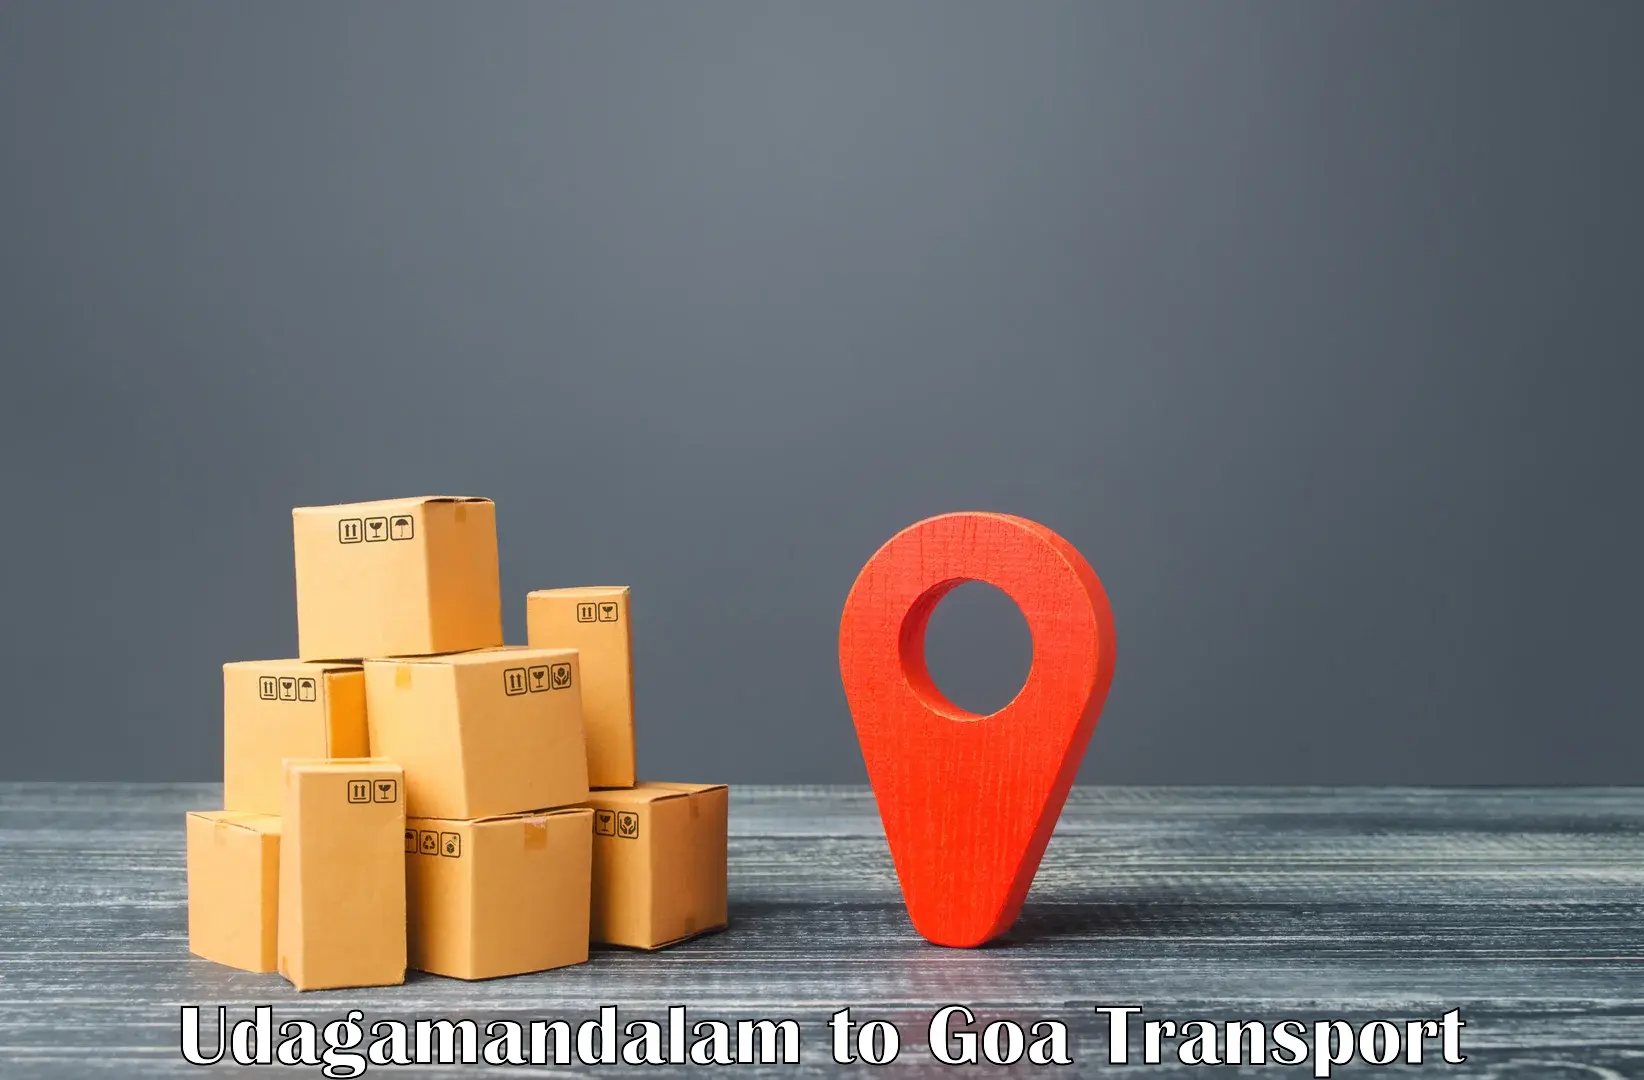 Commercial transport service Udagamandalam to NIT Goa